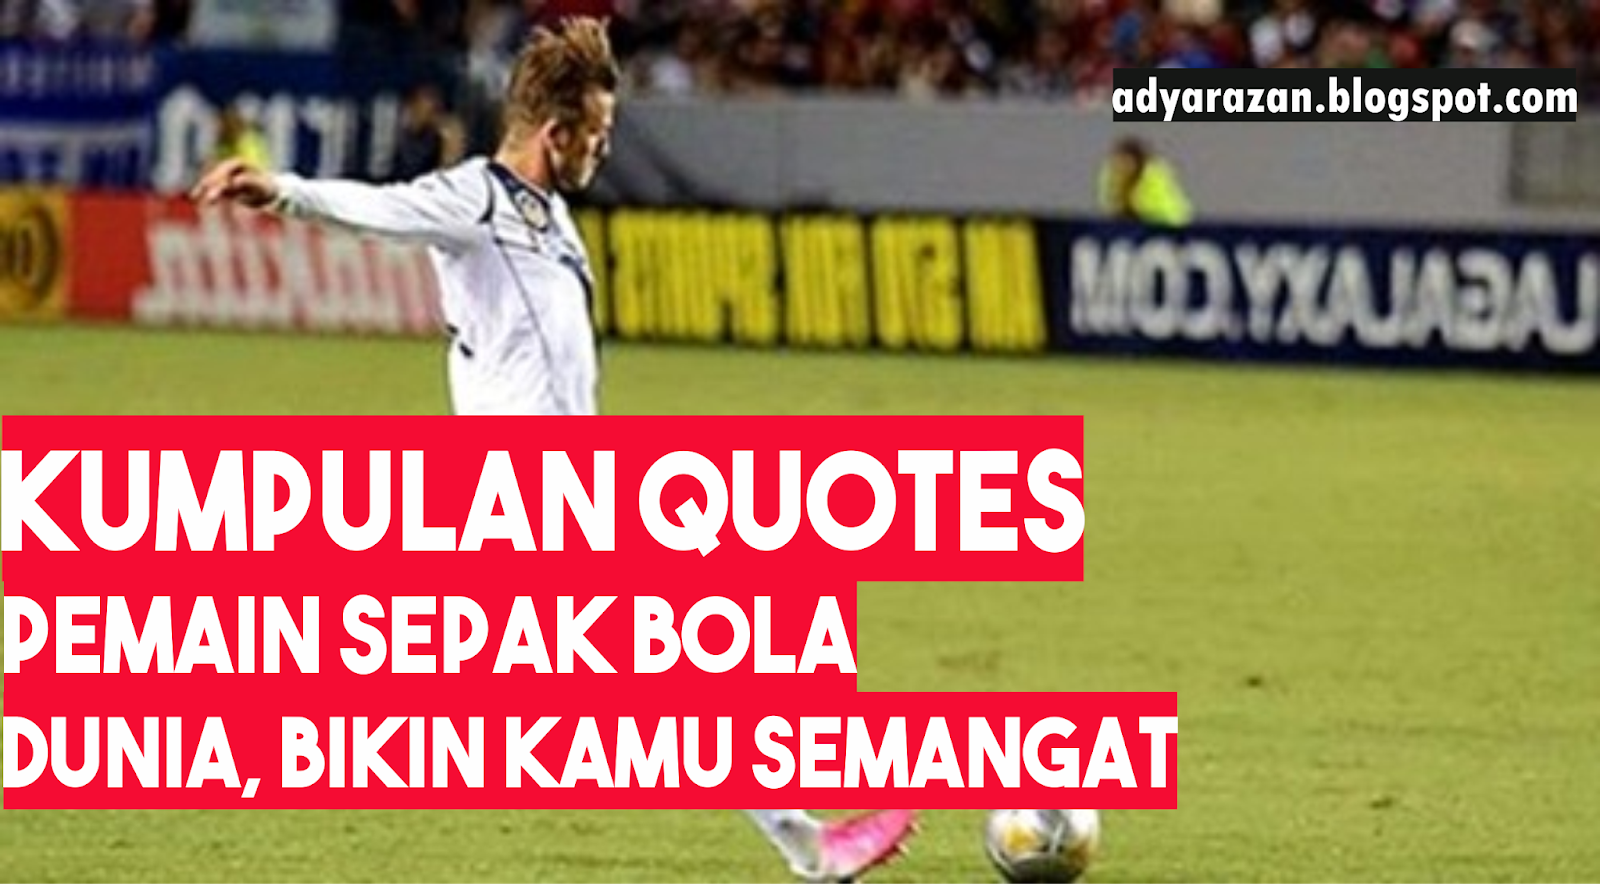 Quotes Bijak Motivasi Dan Penyemangat Dari Pemain Sepakbola Dunia